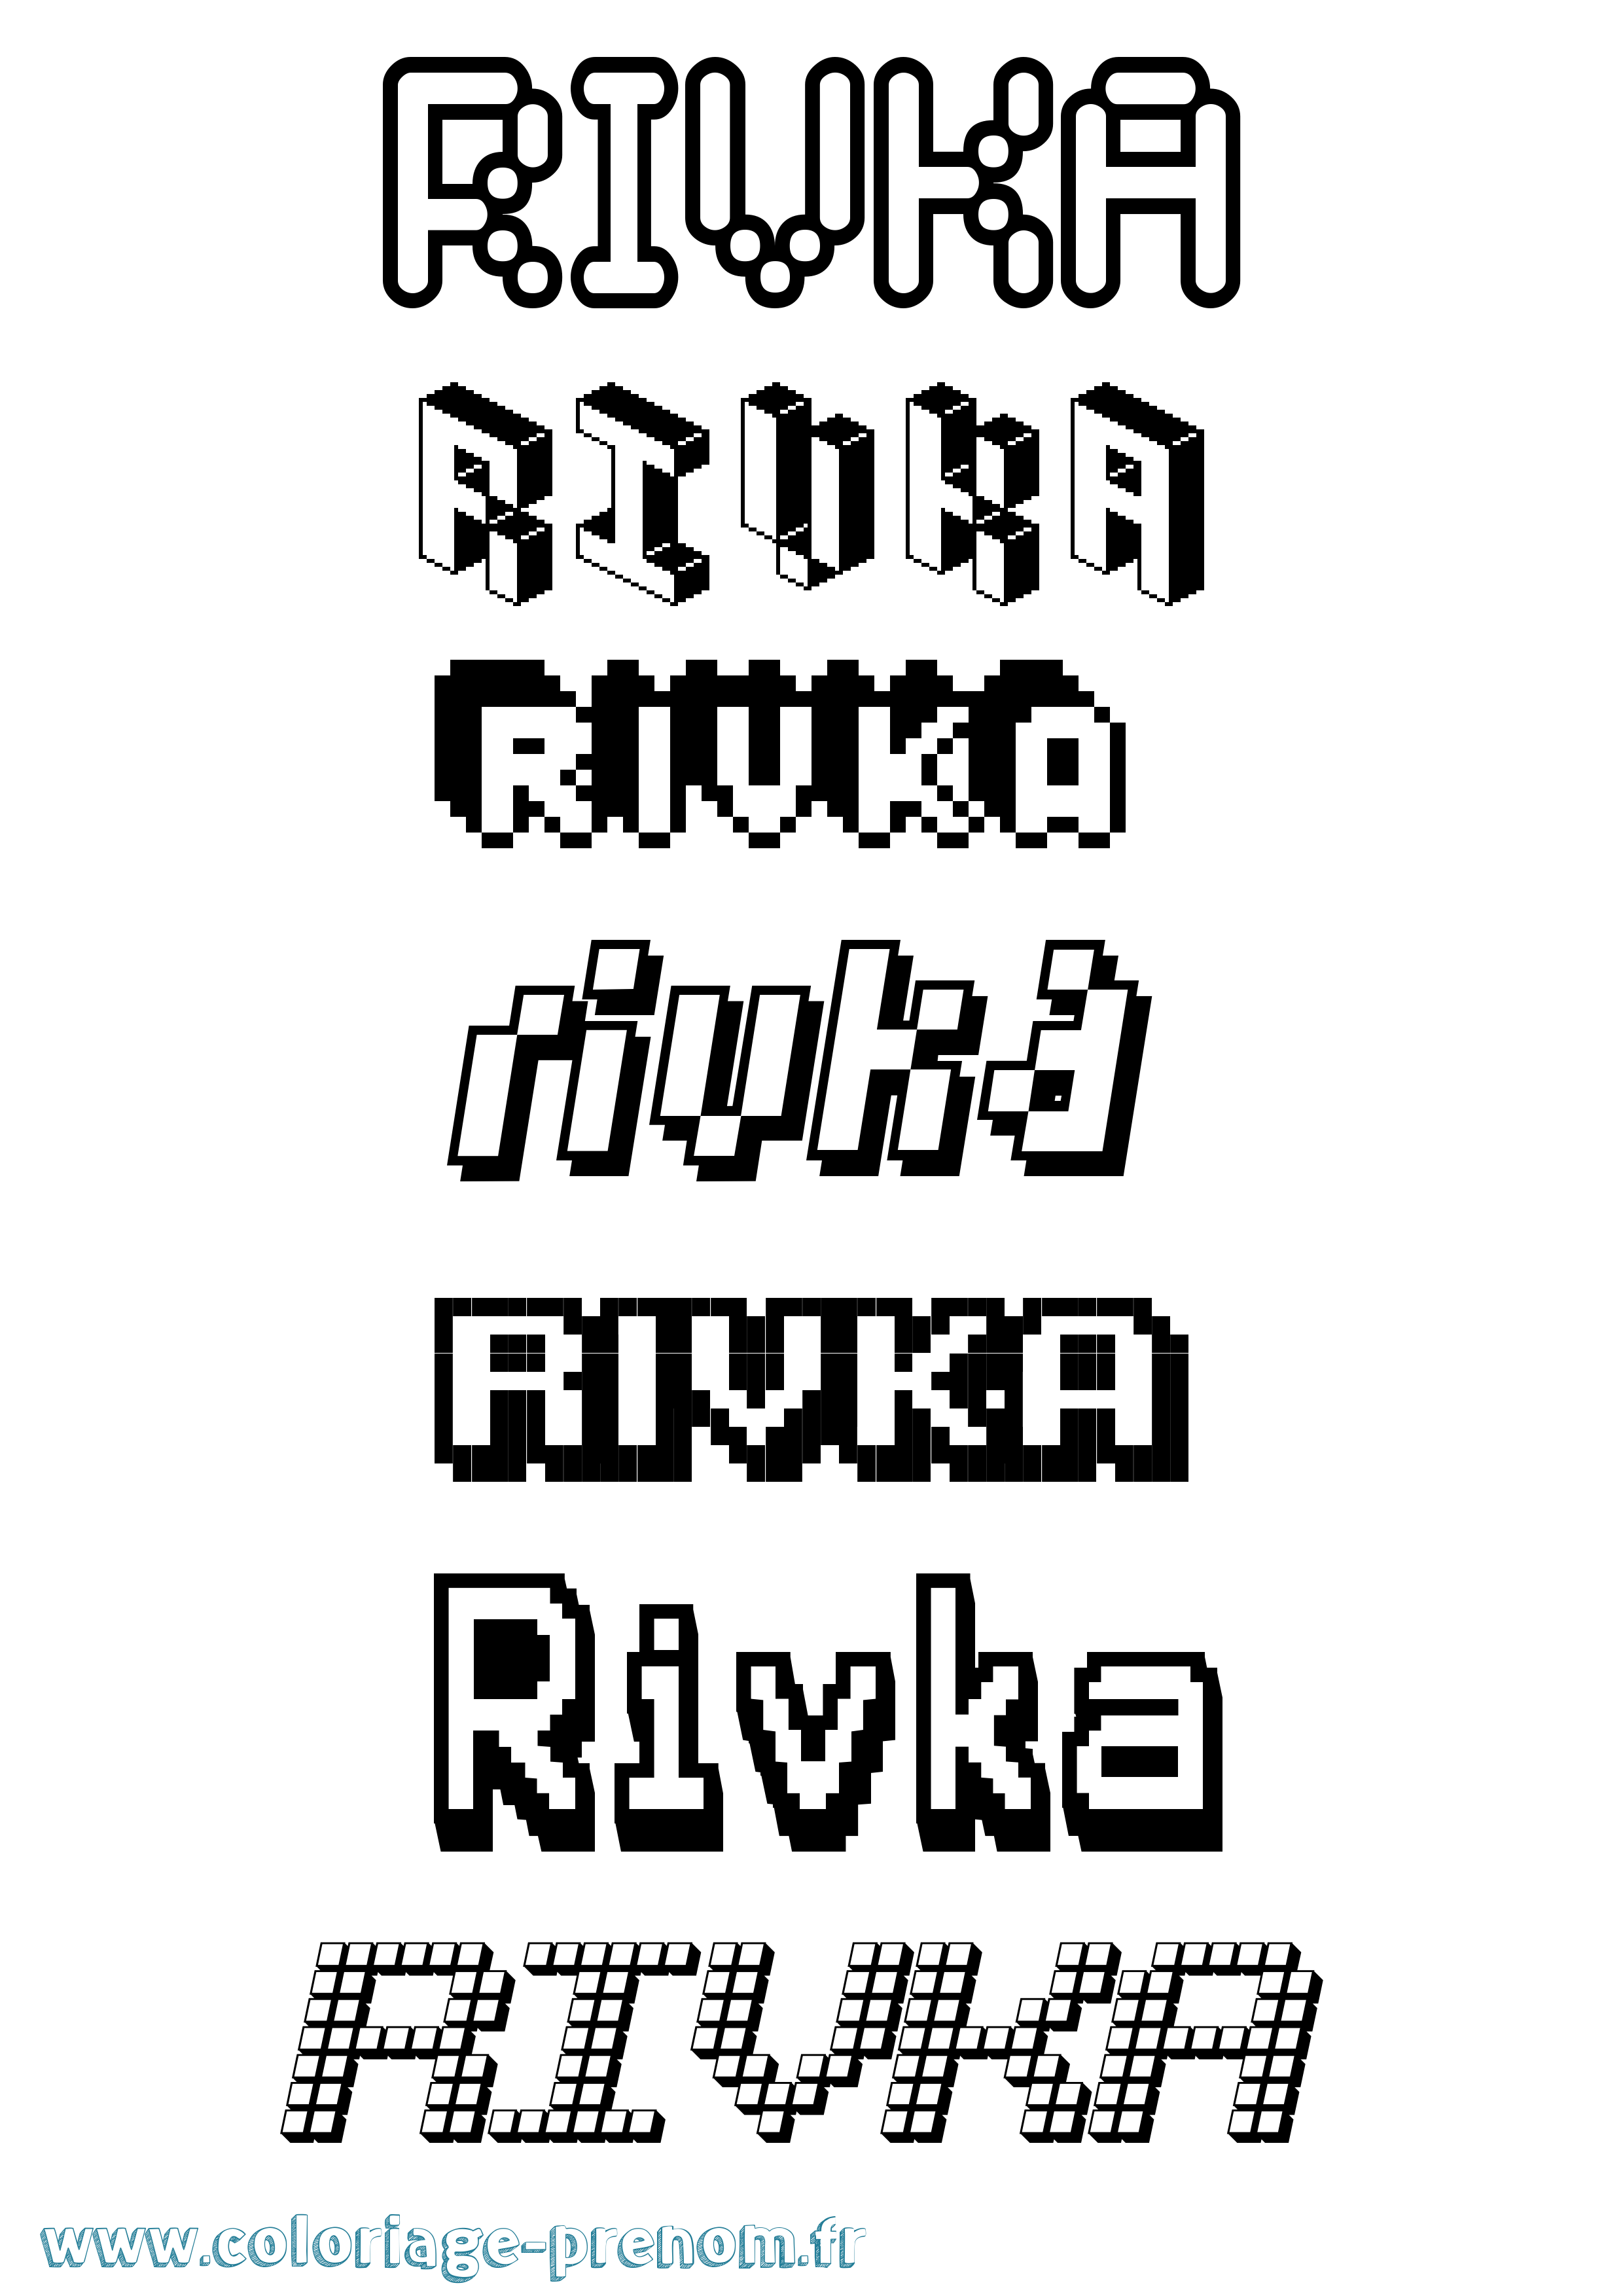 Coloriage prénom Rivka